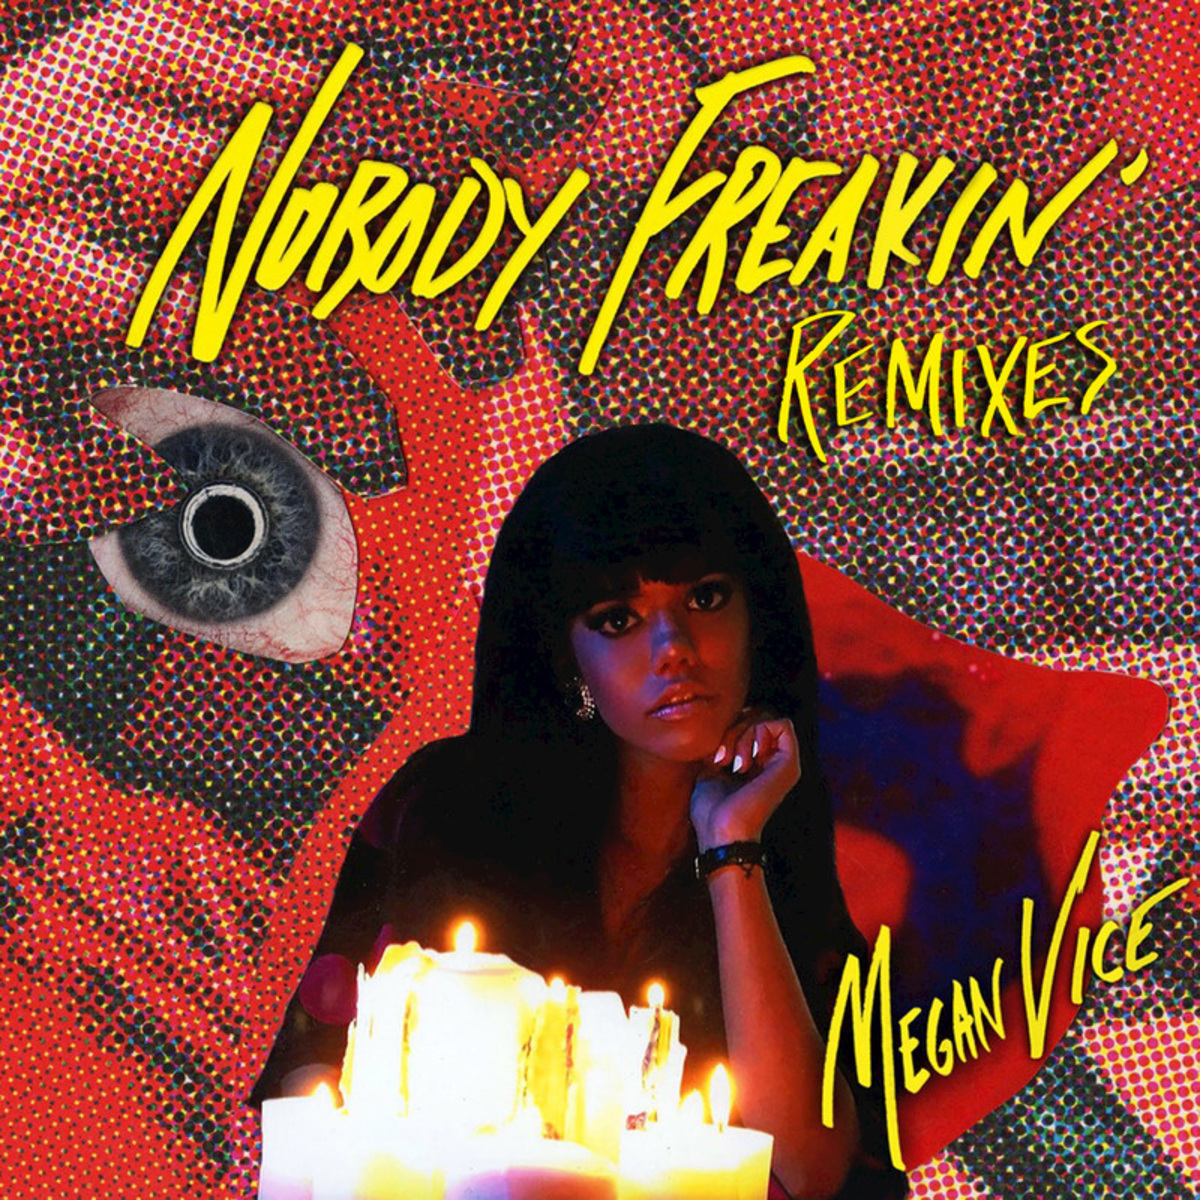 Megan Vice - Nobody Freakin' (Remixes) / Peace Bisquit